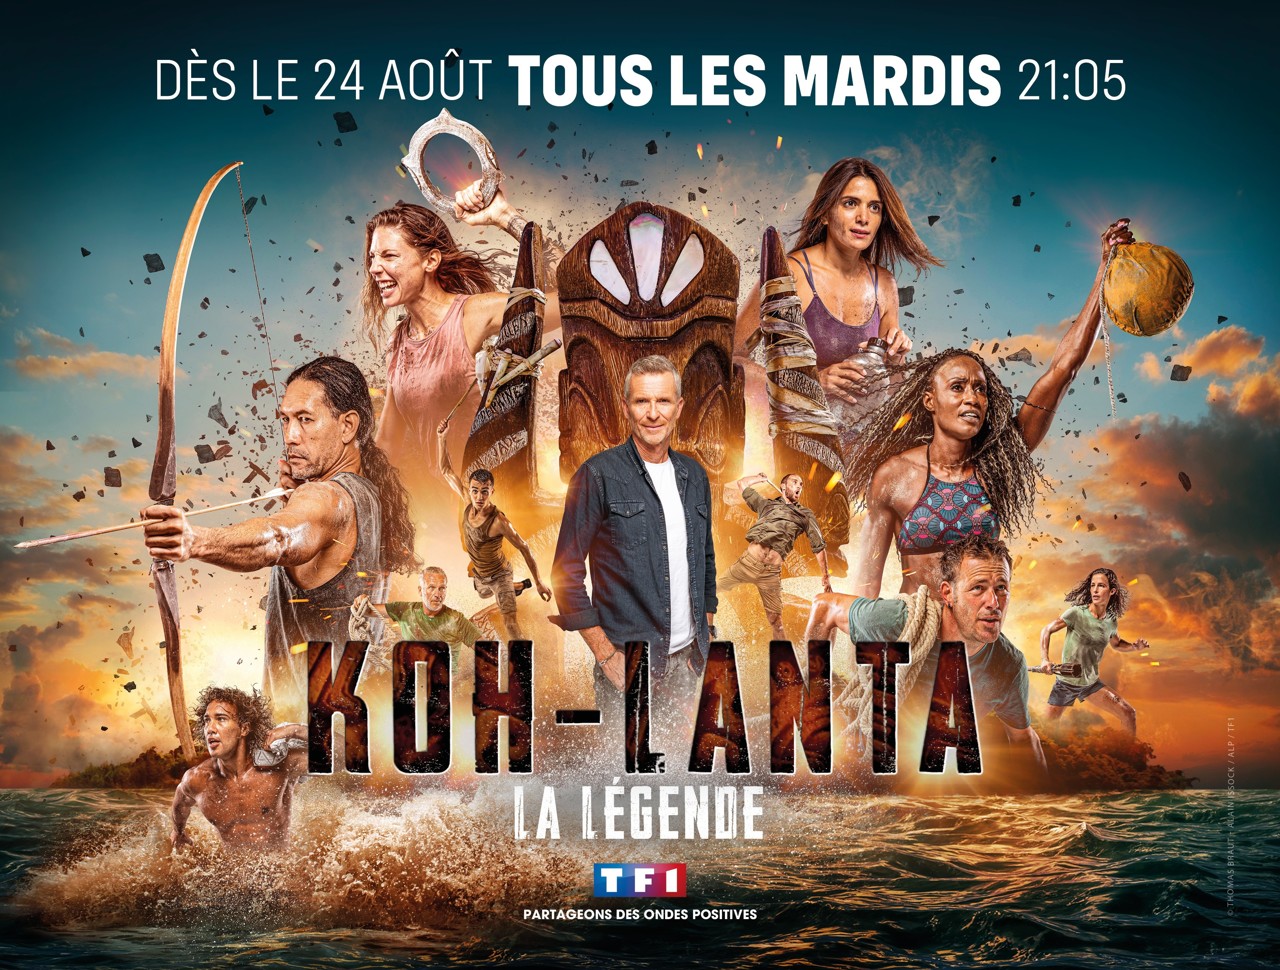  Koh-Lanta, La Légende @ Thomas Brault – Alain Issock / ALP / TF1